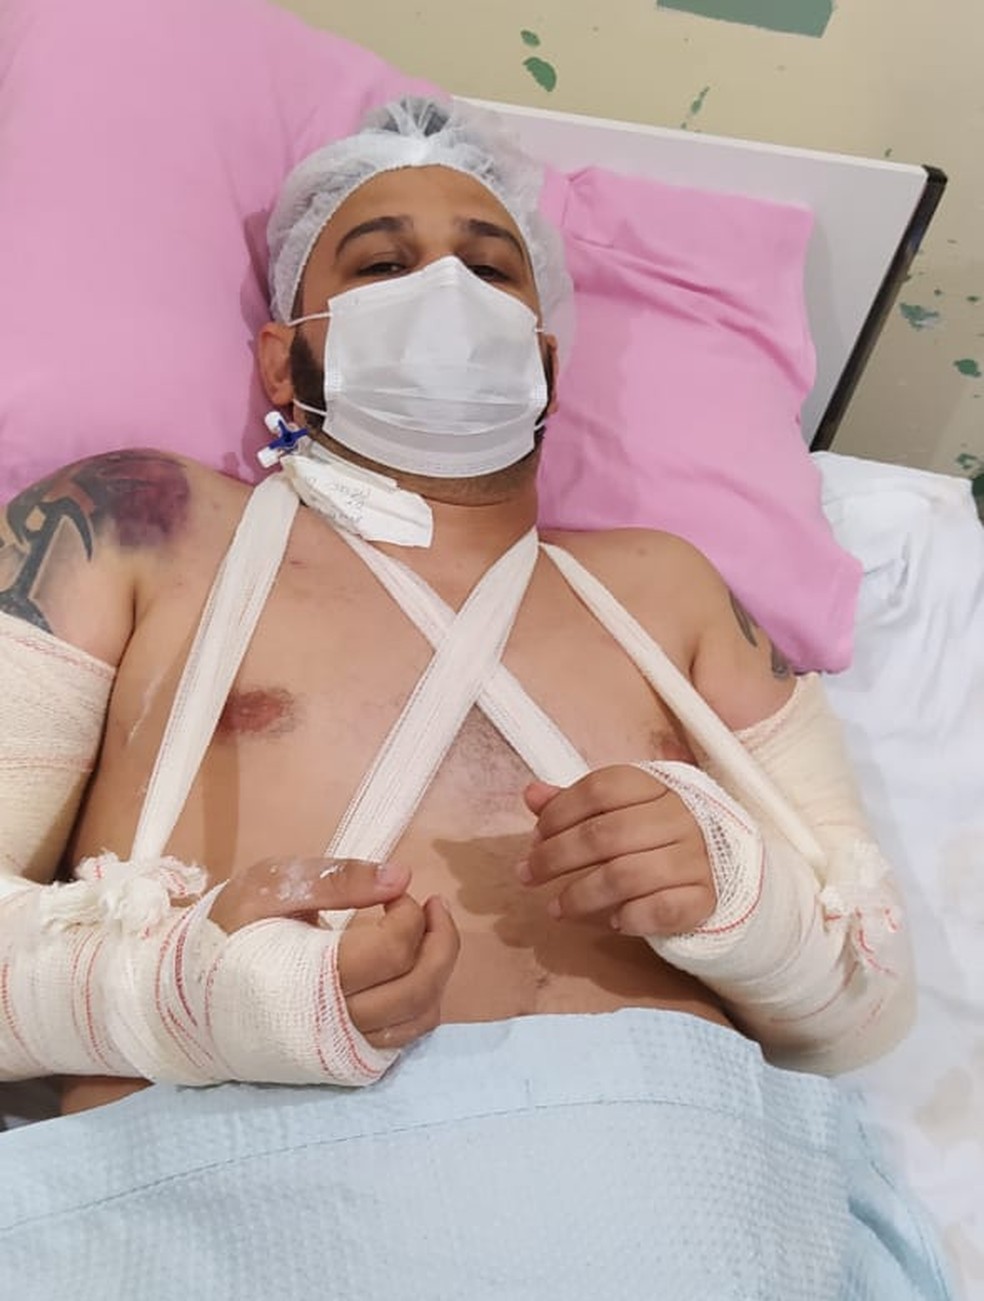 Jornalista Romano dos Anjos foi encontrado com braços quebrados e depois foi internado — Foto: Leliane Matos/Arquivo pessoal